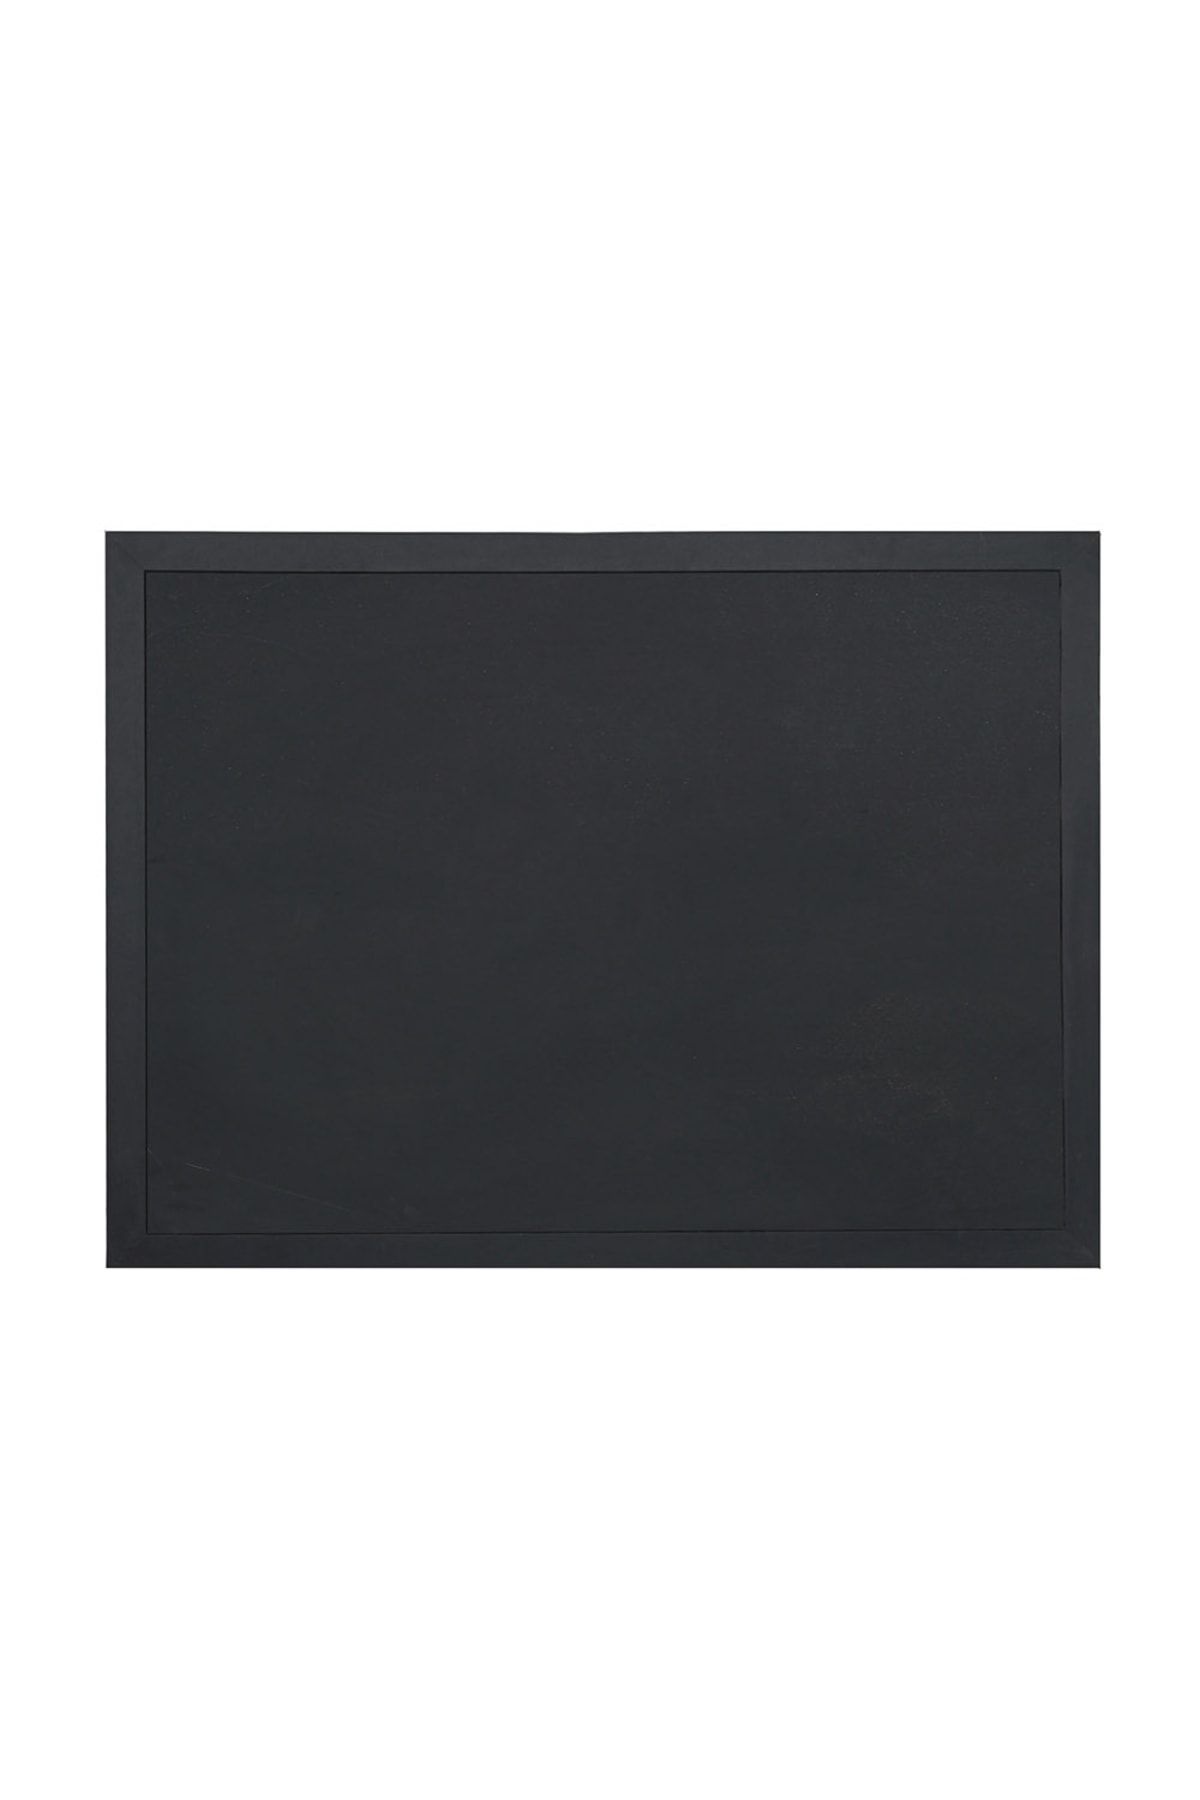 Vivekka 65x100 Siyah Ahşap Çerçeve Laminat Tebeşir Yazı Tahtası- Siyah